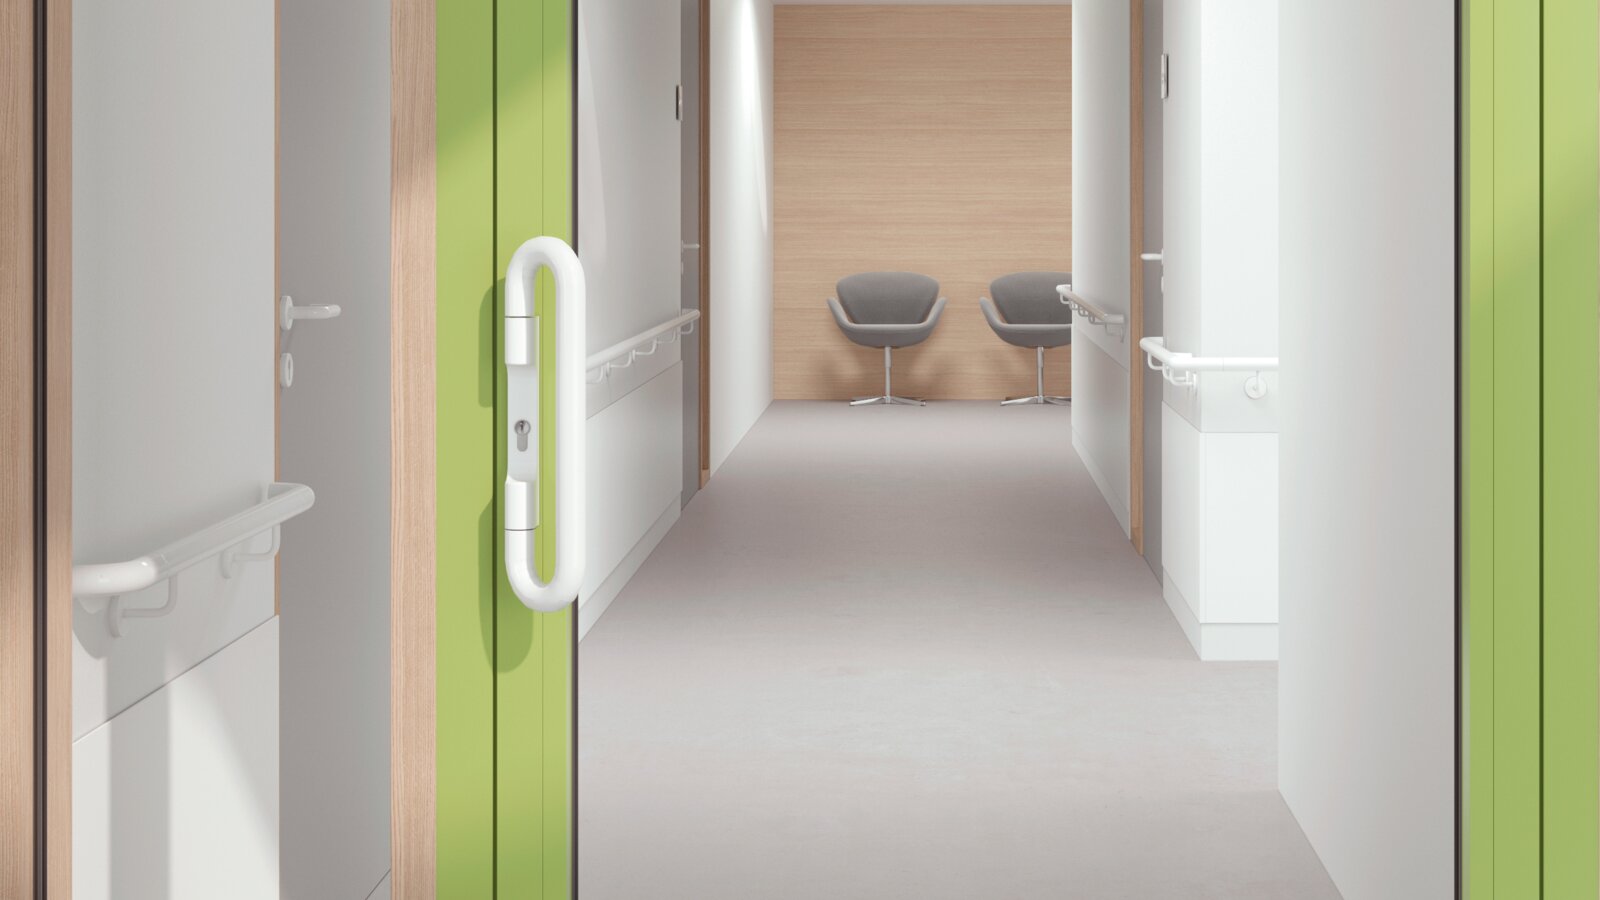 Verglaste Krankenhaustür mit grünem Rahmen ausgestattet mit einem Drückergriff in der Farbe Signalweiß aus Polyamid